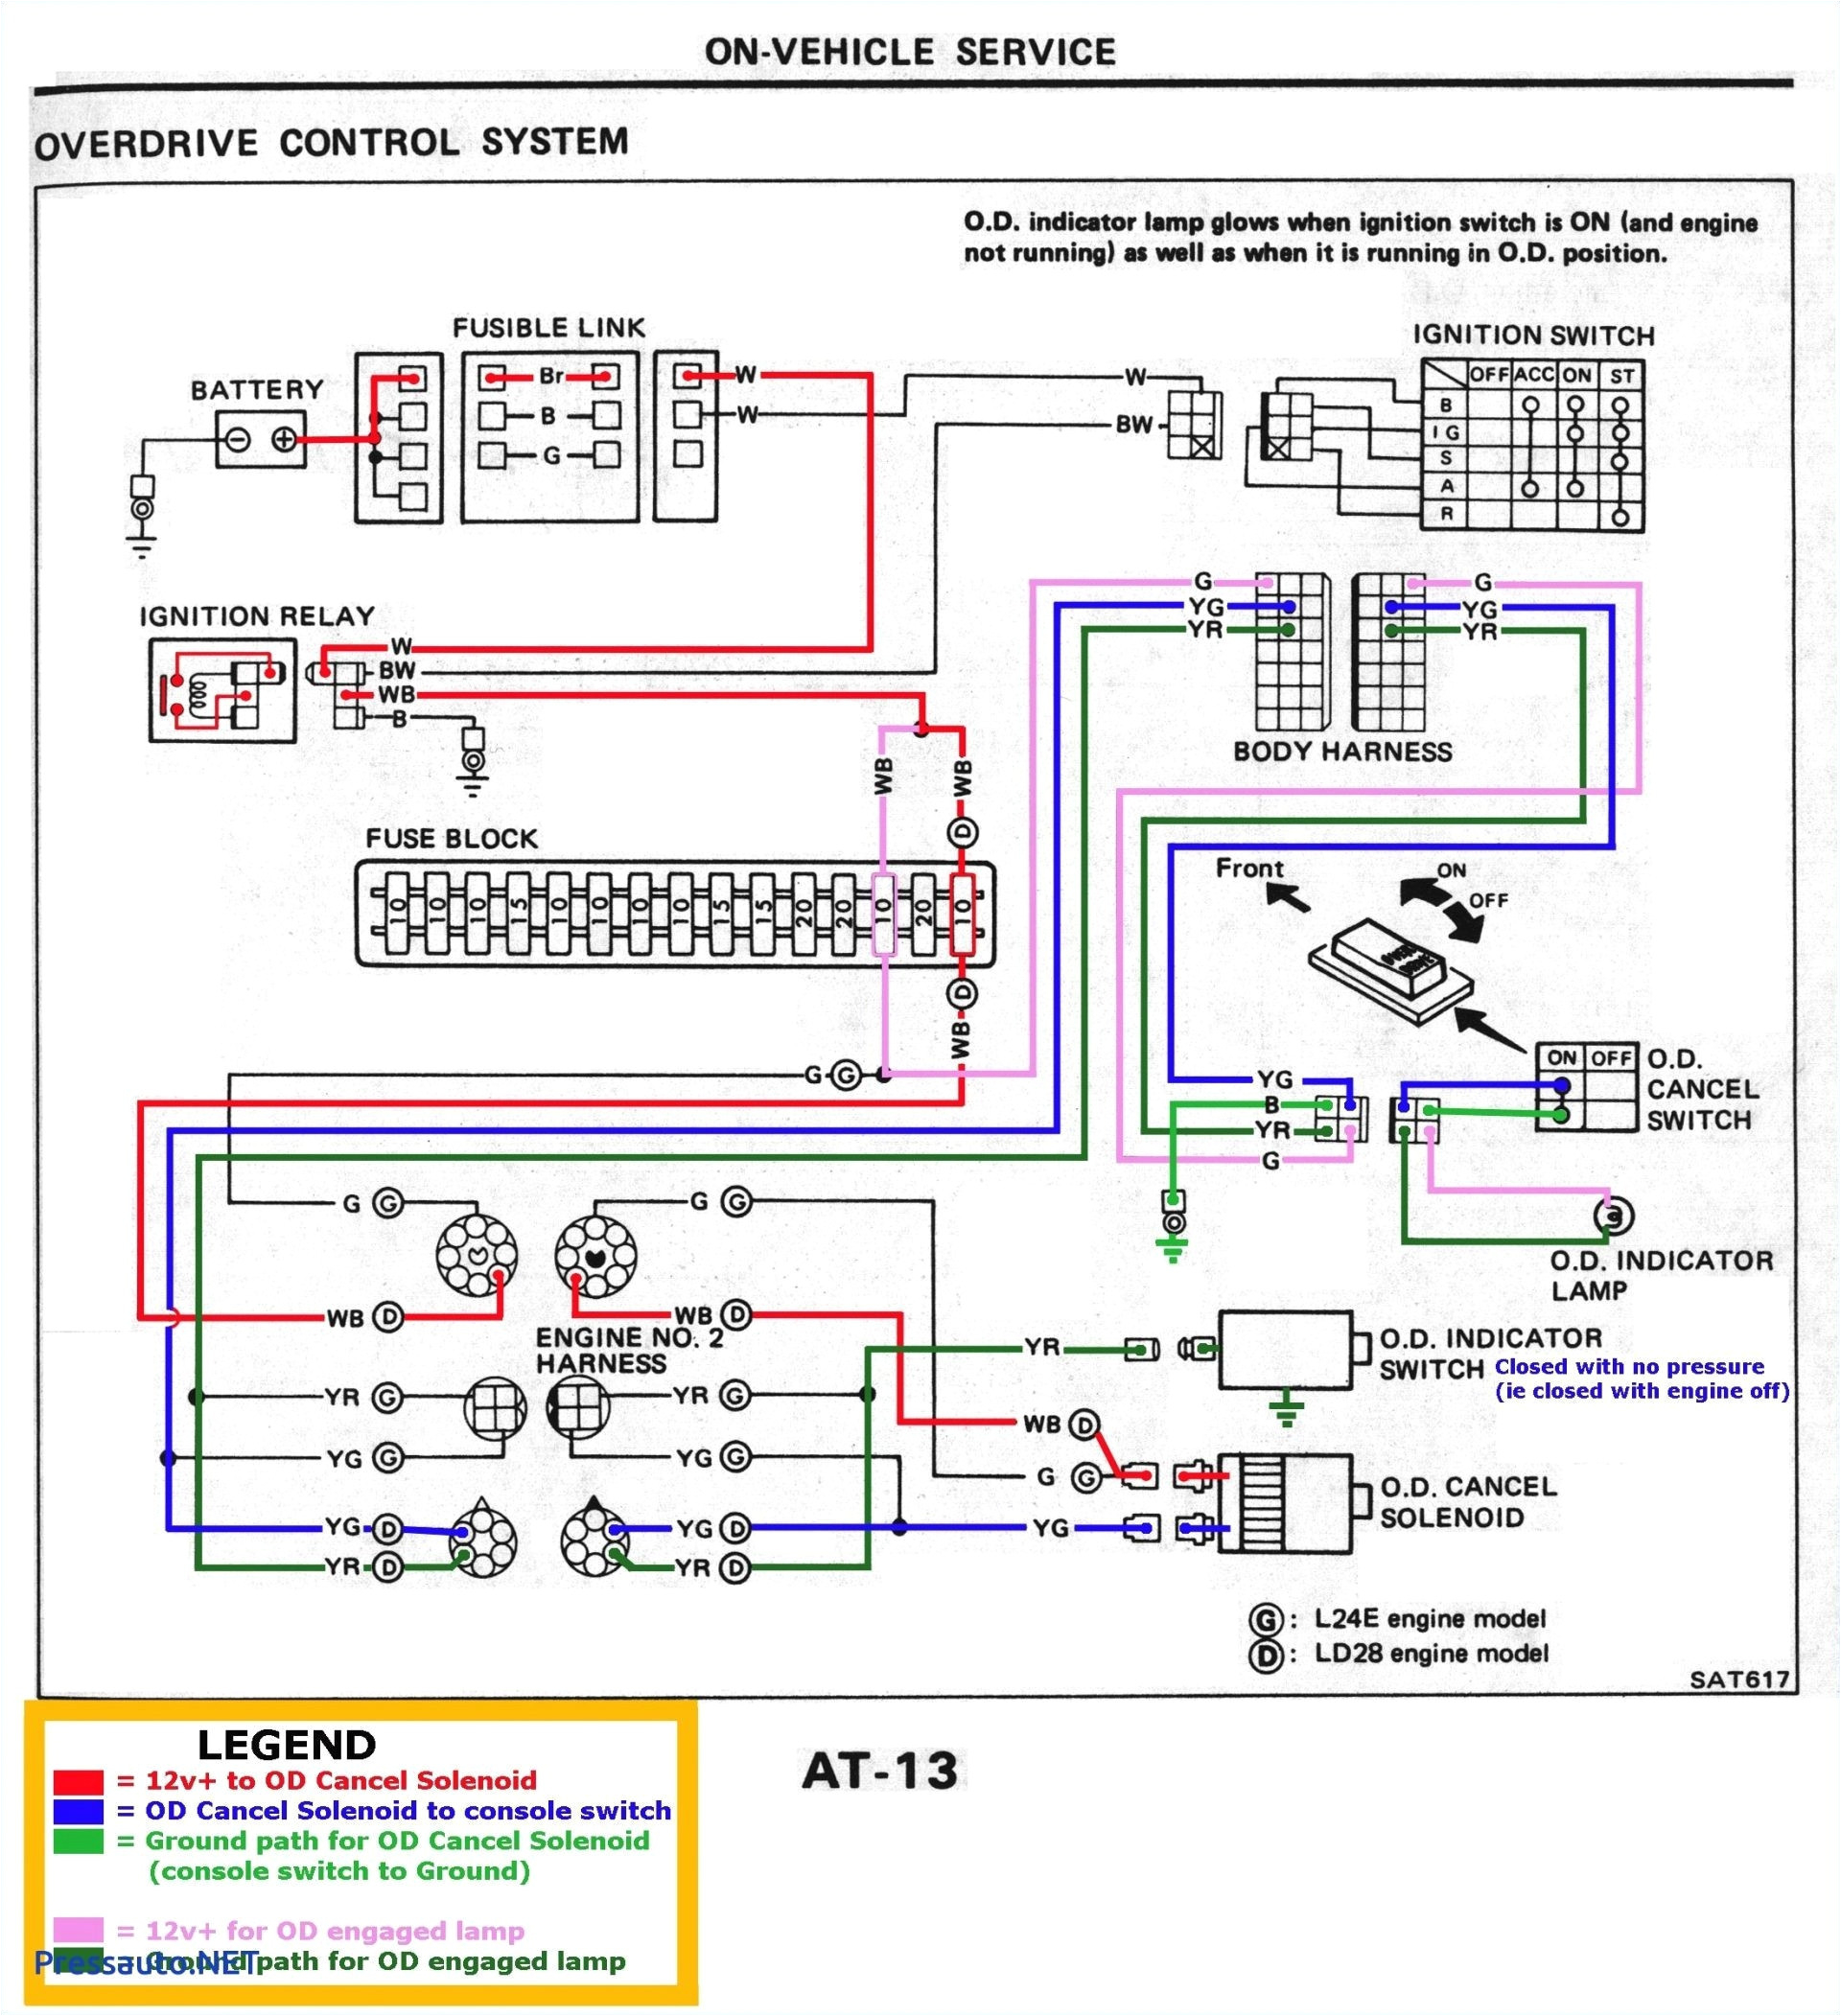 krpa 11dg 24 wiring diagram best of krpa 11dg 24 wiring diagram rate automotive wiring diagram